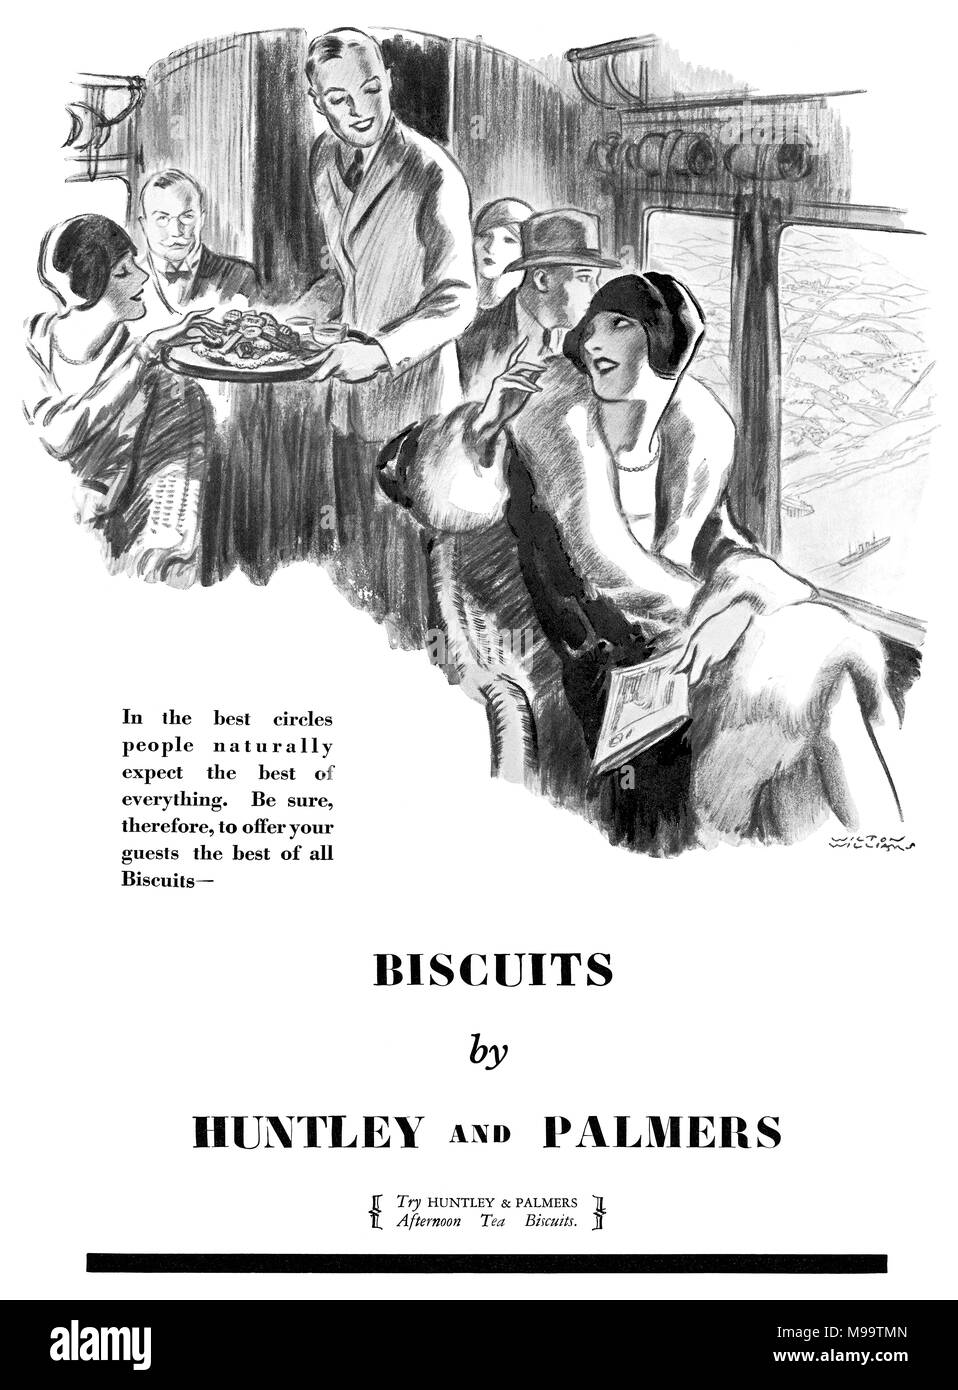 1928 Britische advertsiement für Huntley und Palmers Biscuits, illustriert von Wilton Williams. Stockfoto